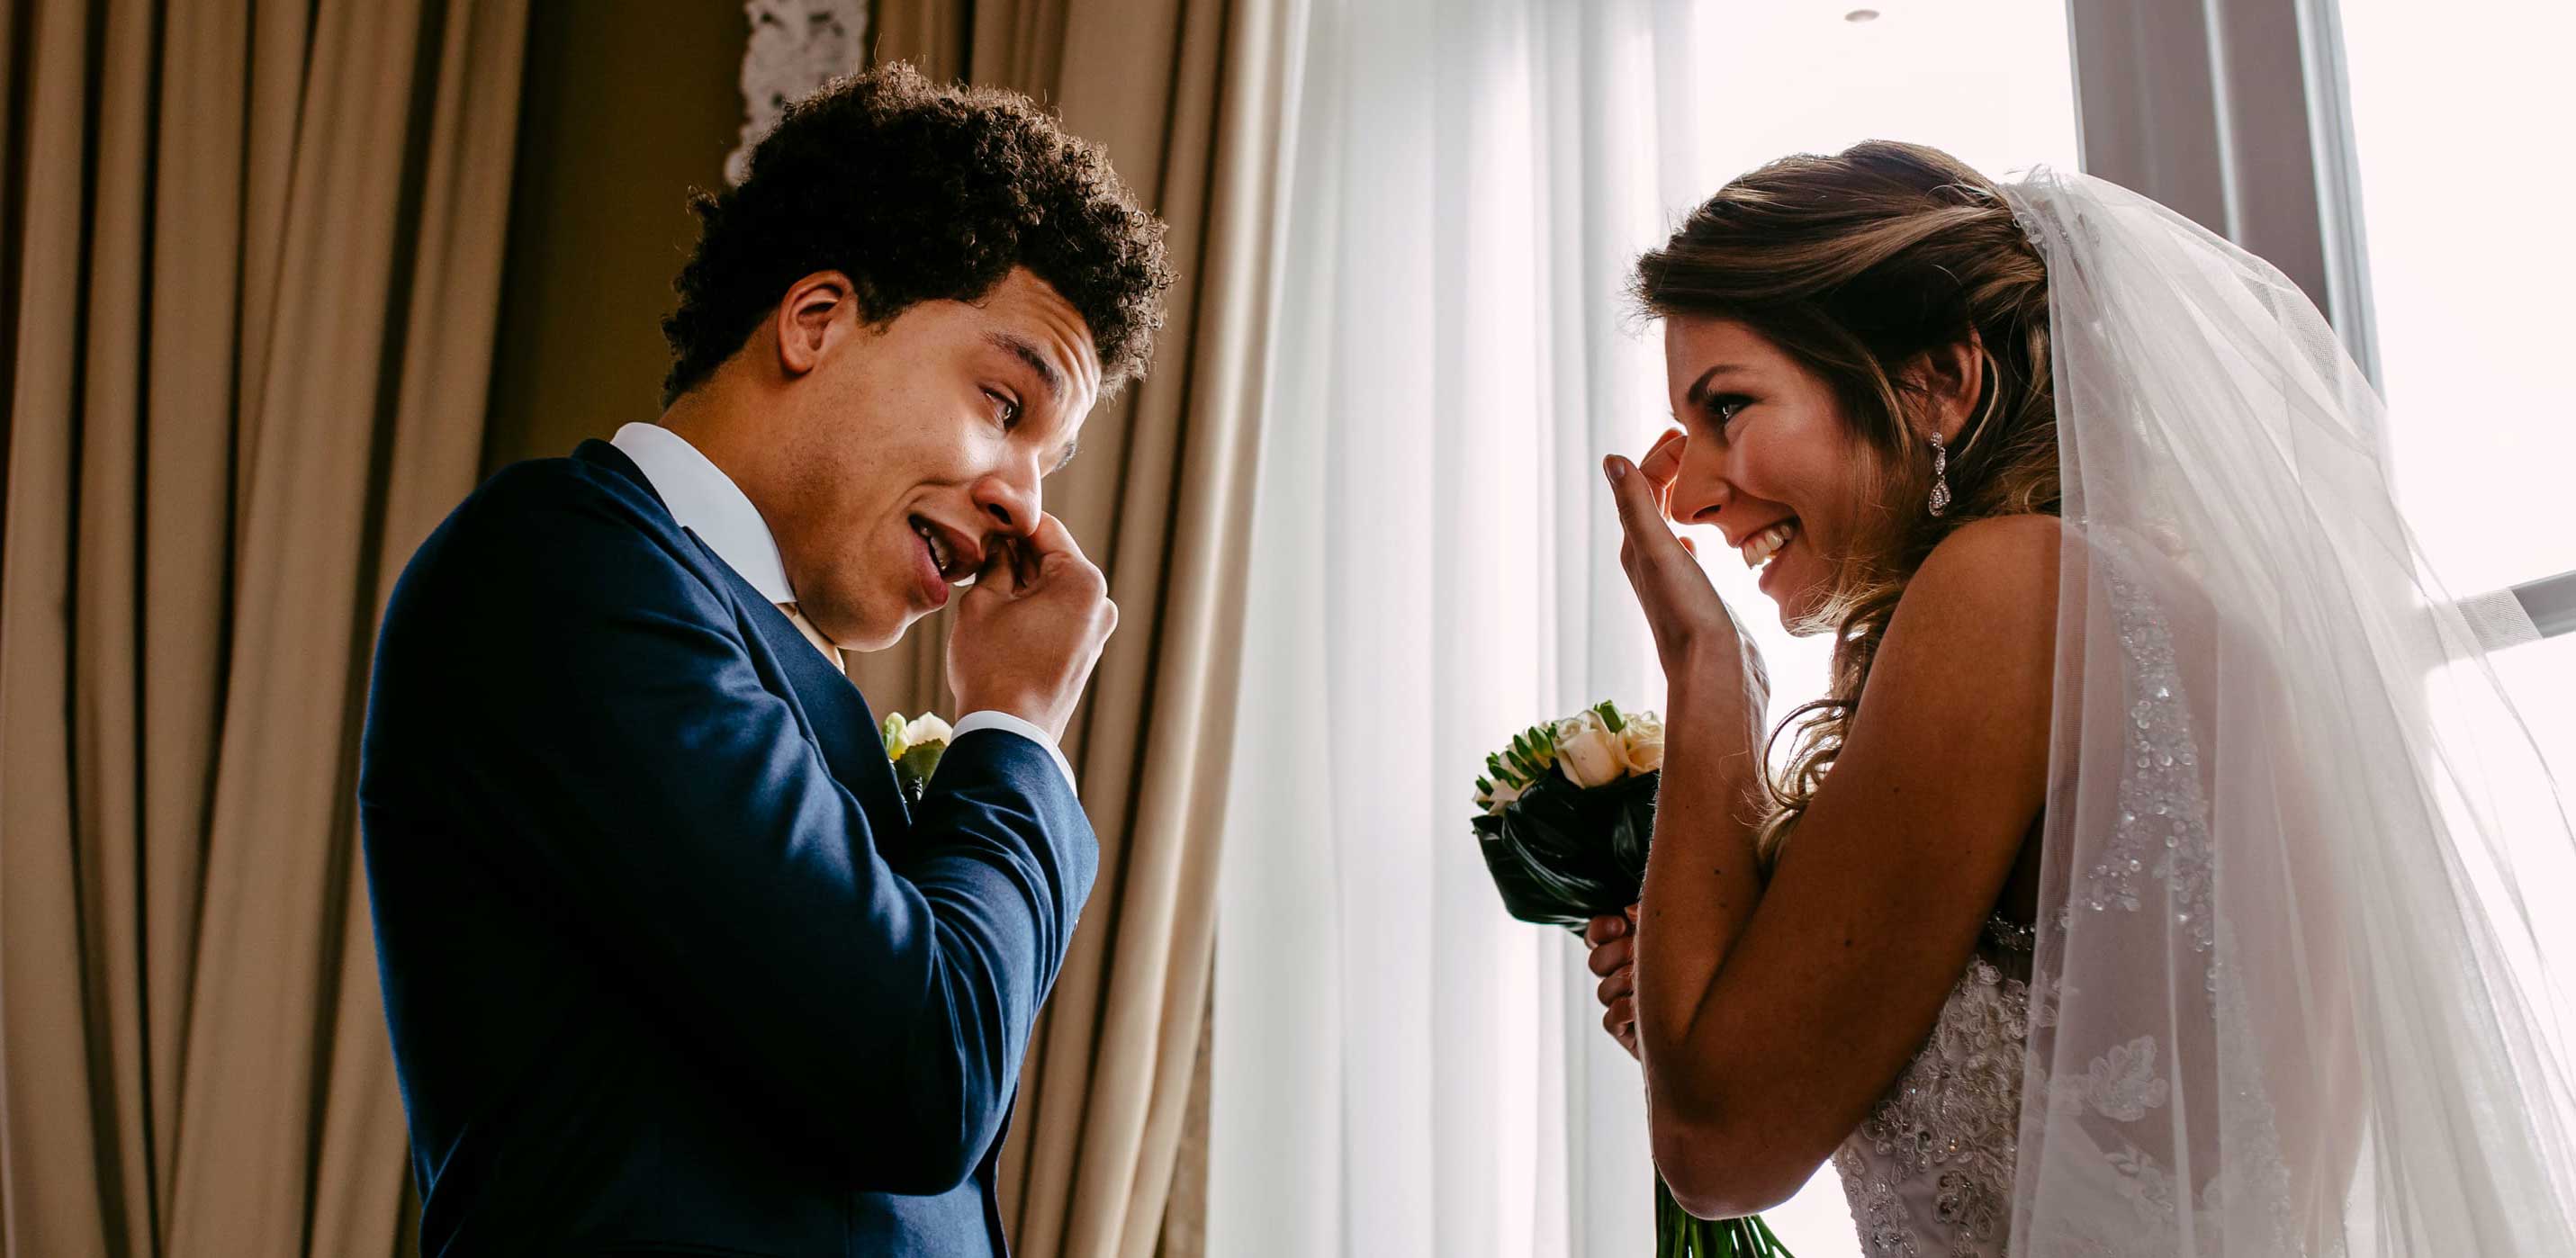 Een bruid en bruidegom die een luchtig moment beleven voor een raam, vastgelegd door een trouwfotograaf.